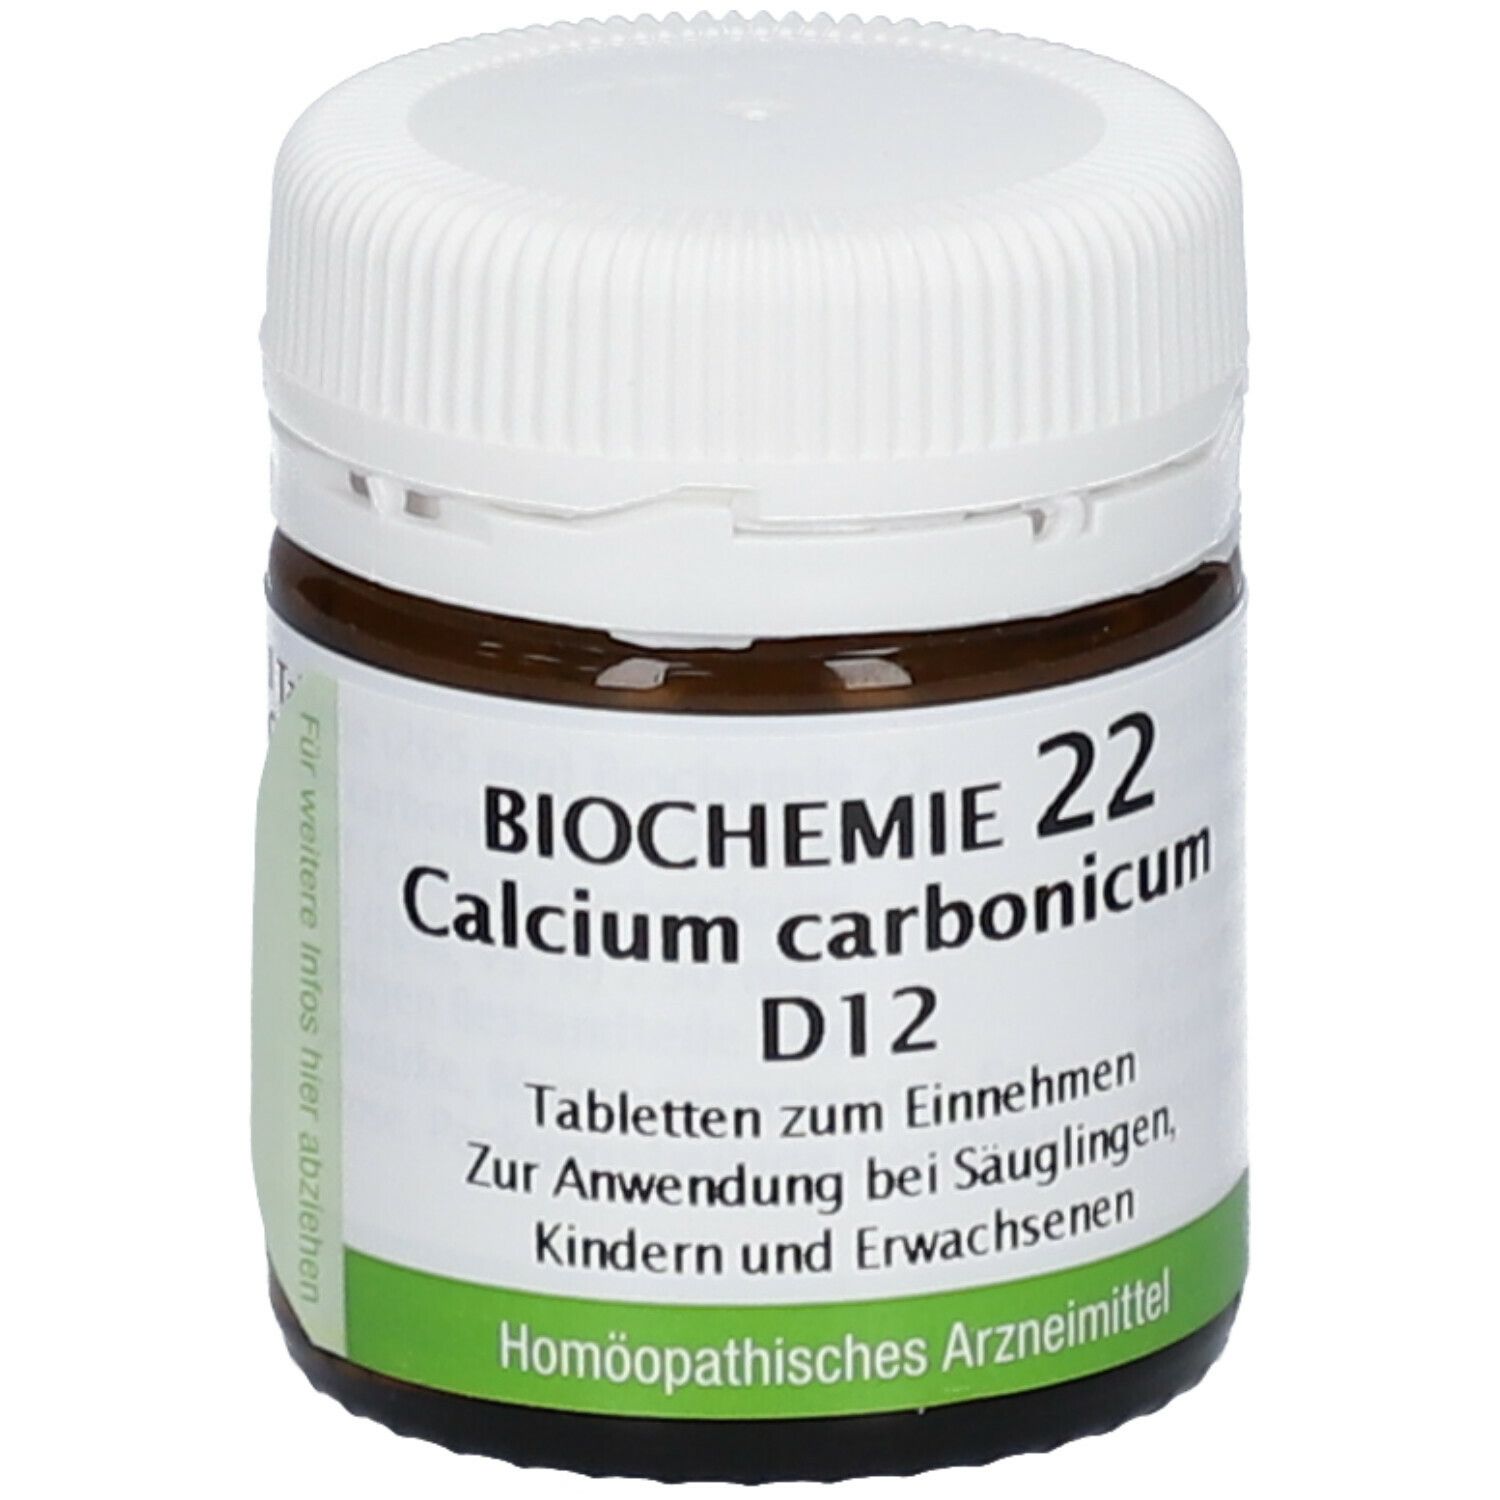 Bombastus Biochemie 22 Calcium carbonicum D 12 Tabletten